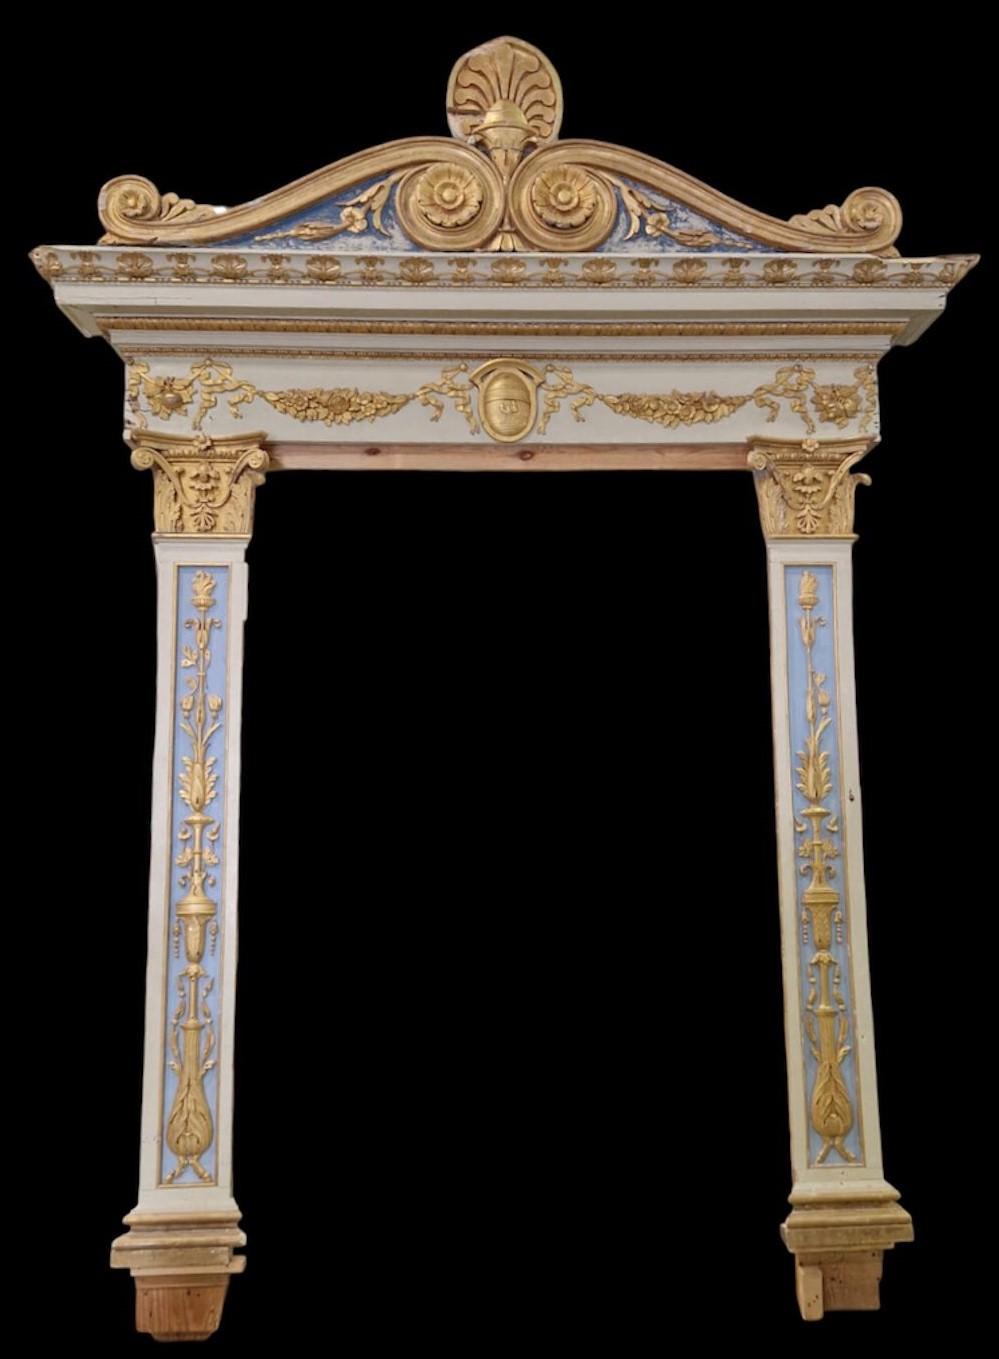 Antikes, riesiges Eingangsportal aus bemaltem, vergoldetem und reich geschnitztem Holz mit historischen Motiven.
Großer antiker Gegenstand, wichtig sowohl für seine Geschichte als auch für seine Größe, wird zusammengebaut verkauft (2 Beine +